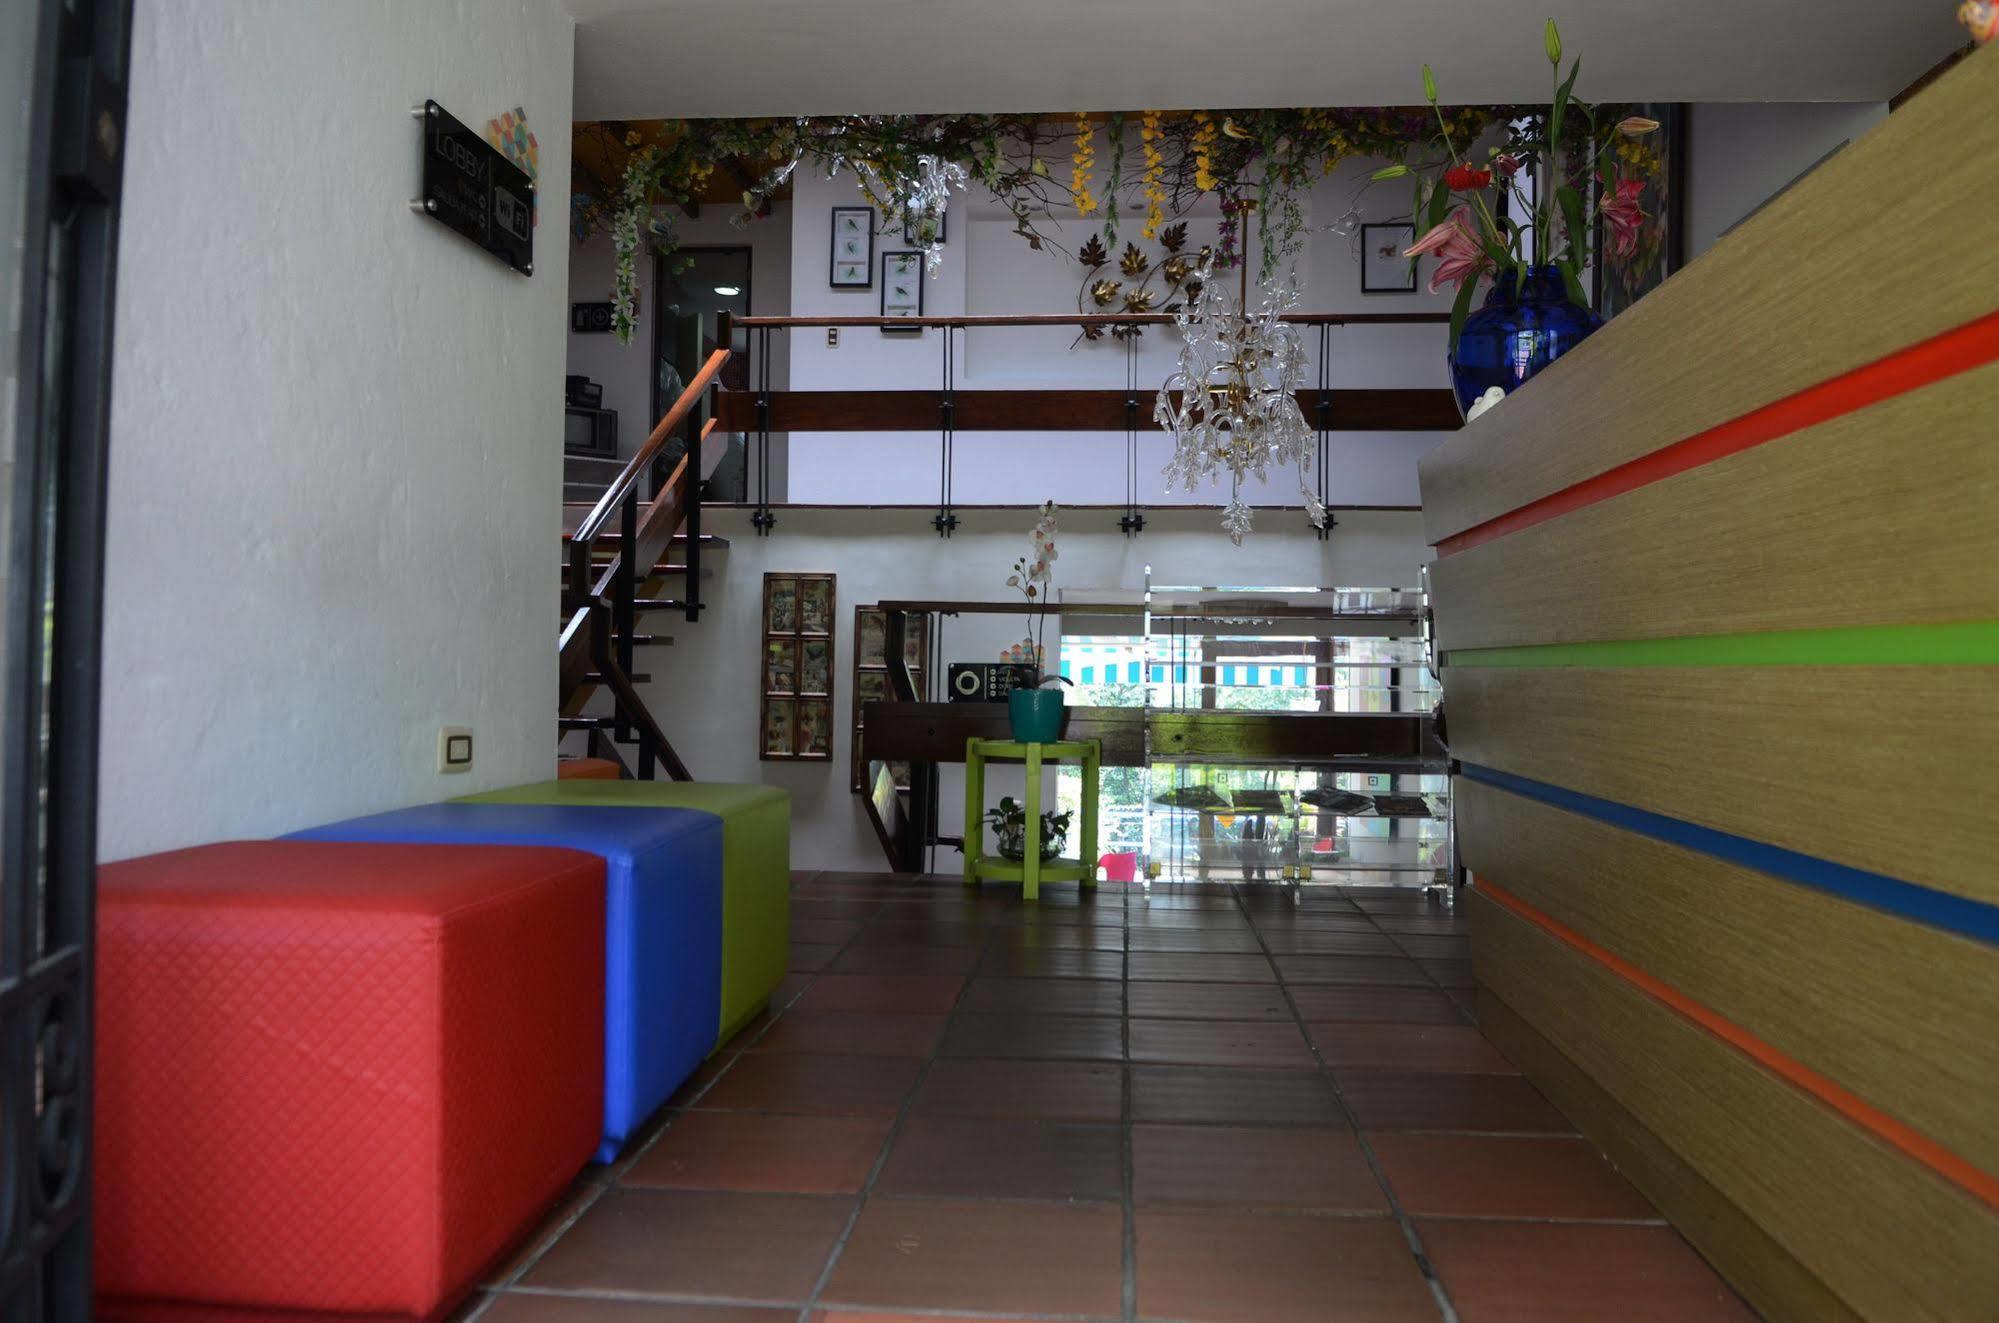 Kolor Hotel Boutique Medellín Kültér fotó